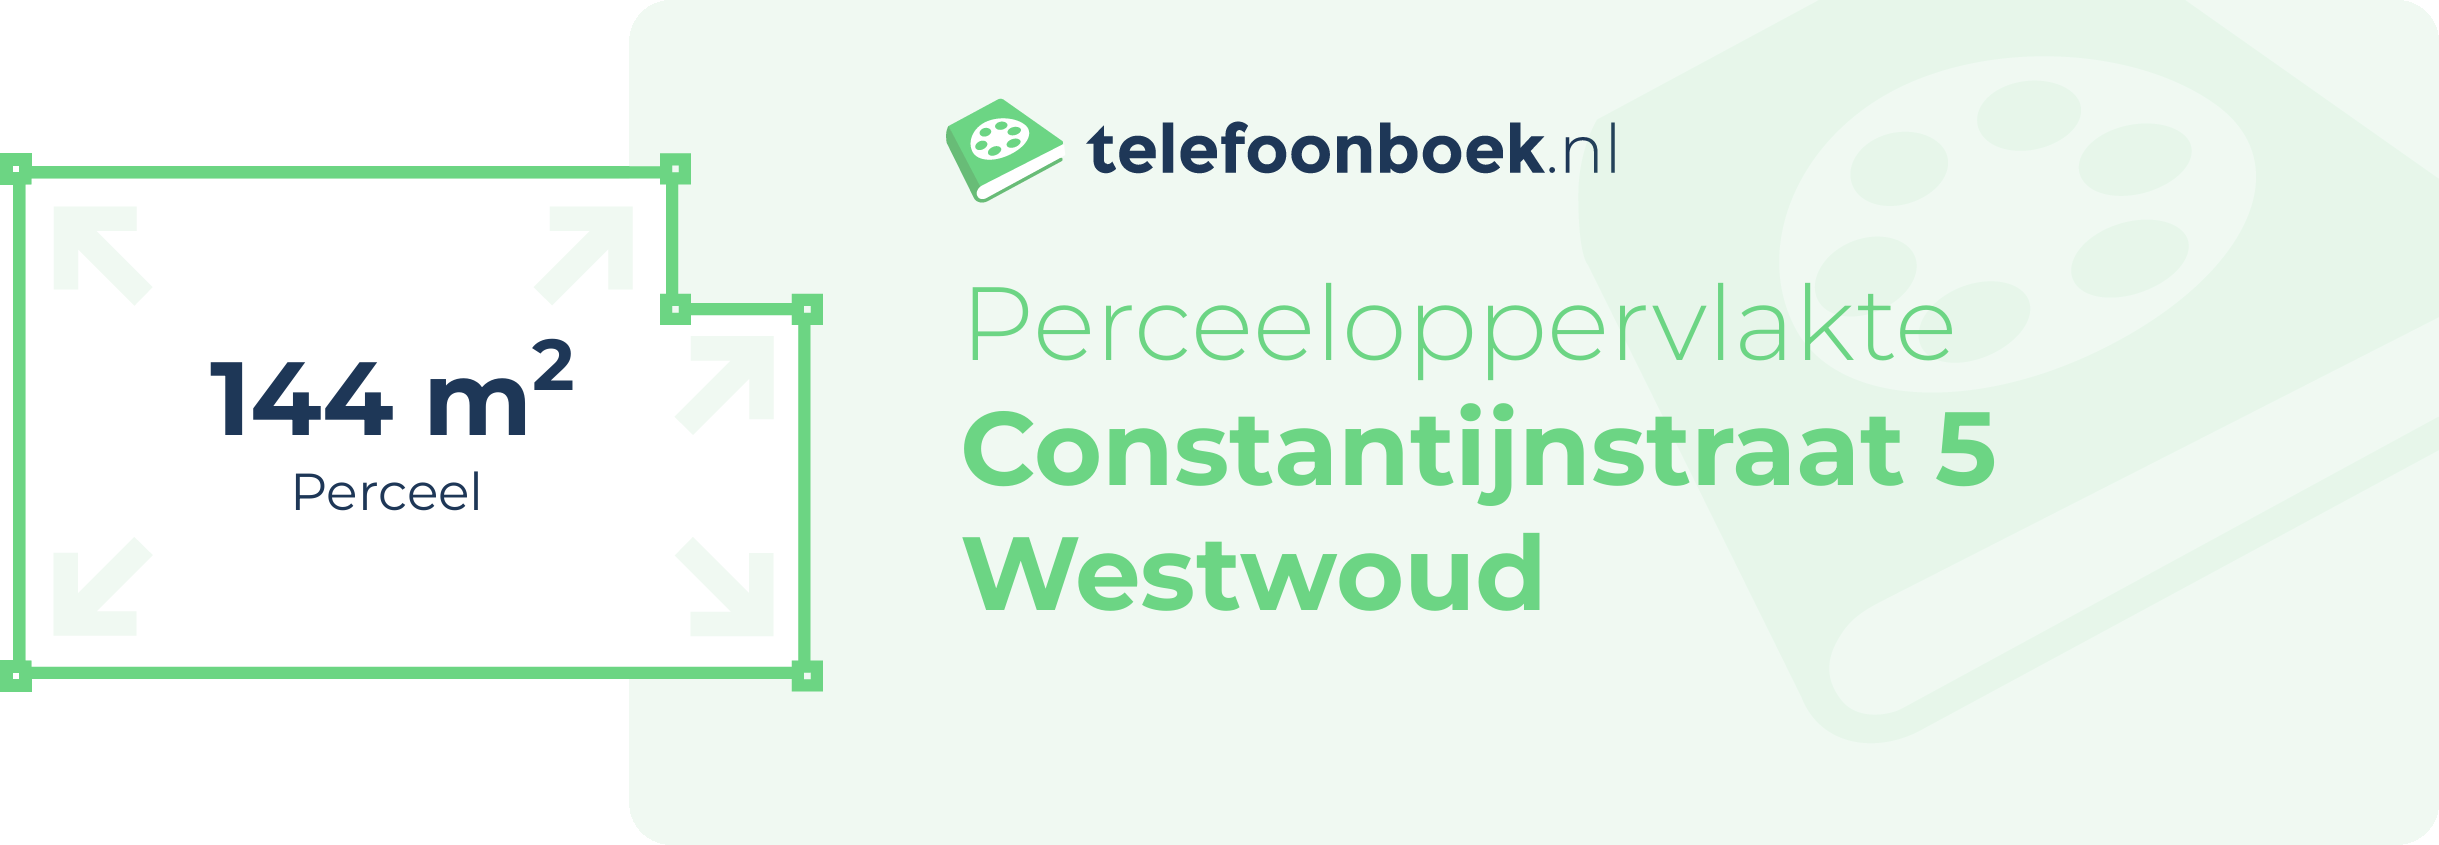 Perceeloppervlakte Constantijnstraat 5 Westwoud